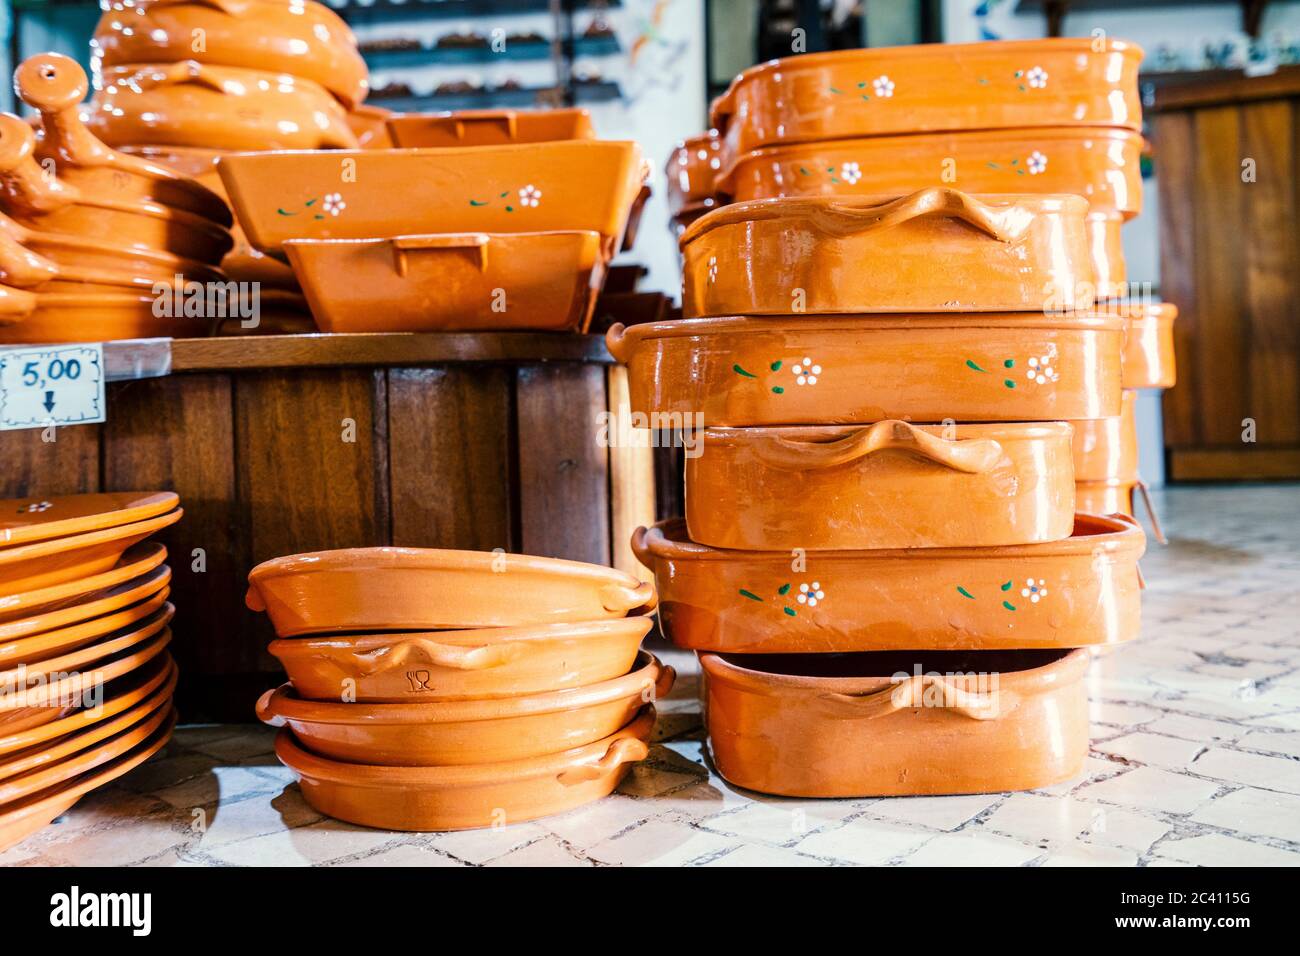 Traditioneller portugiesischer Topf aus Ton in einem Geschäft verkauft  Stockfotografie - Alamy